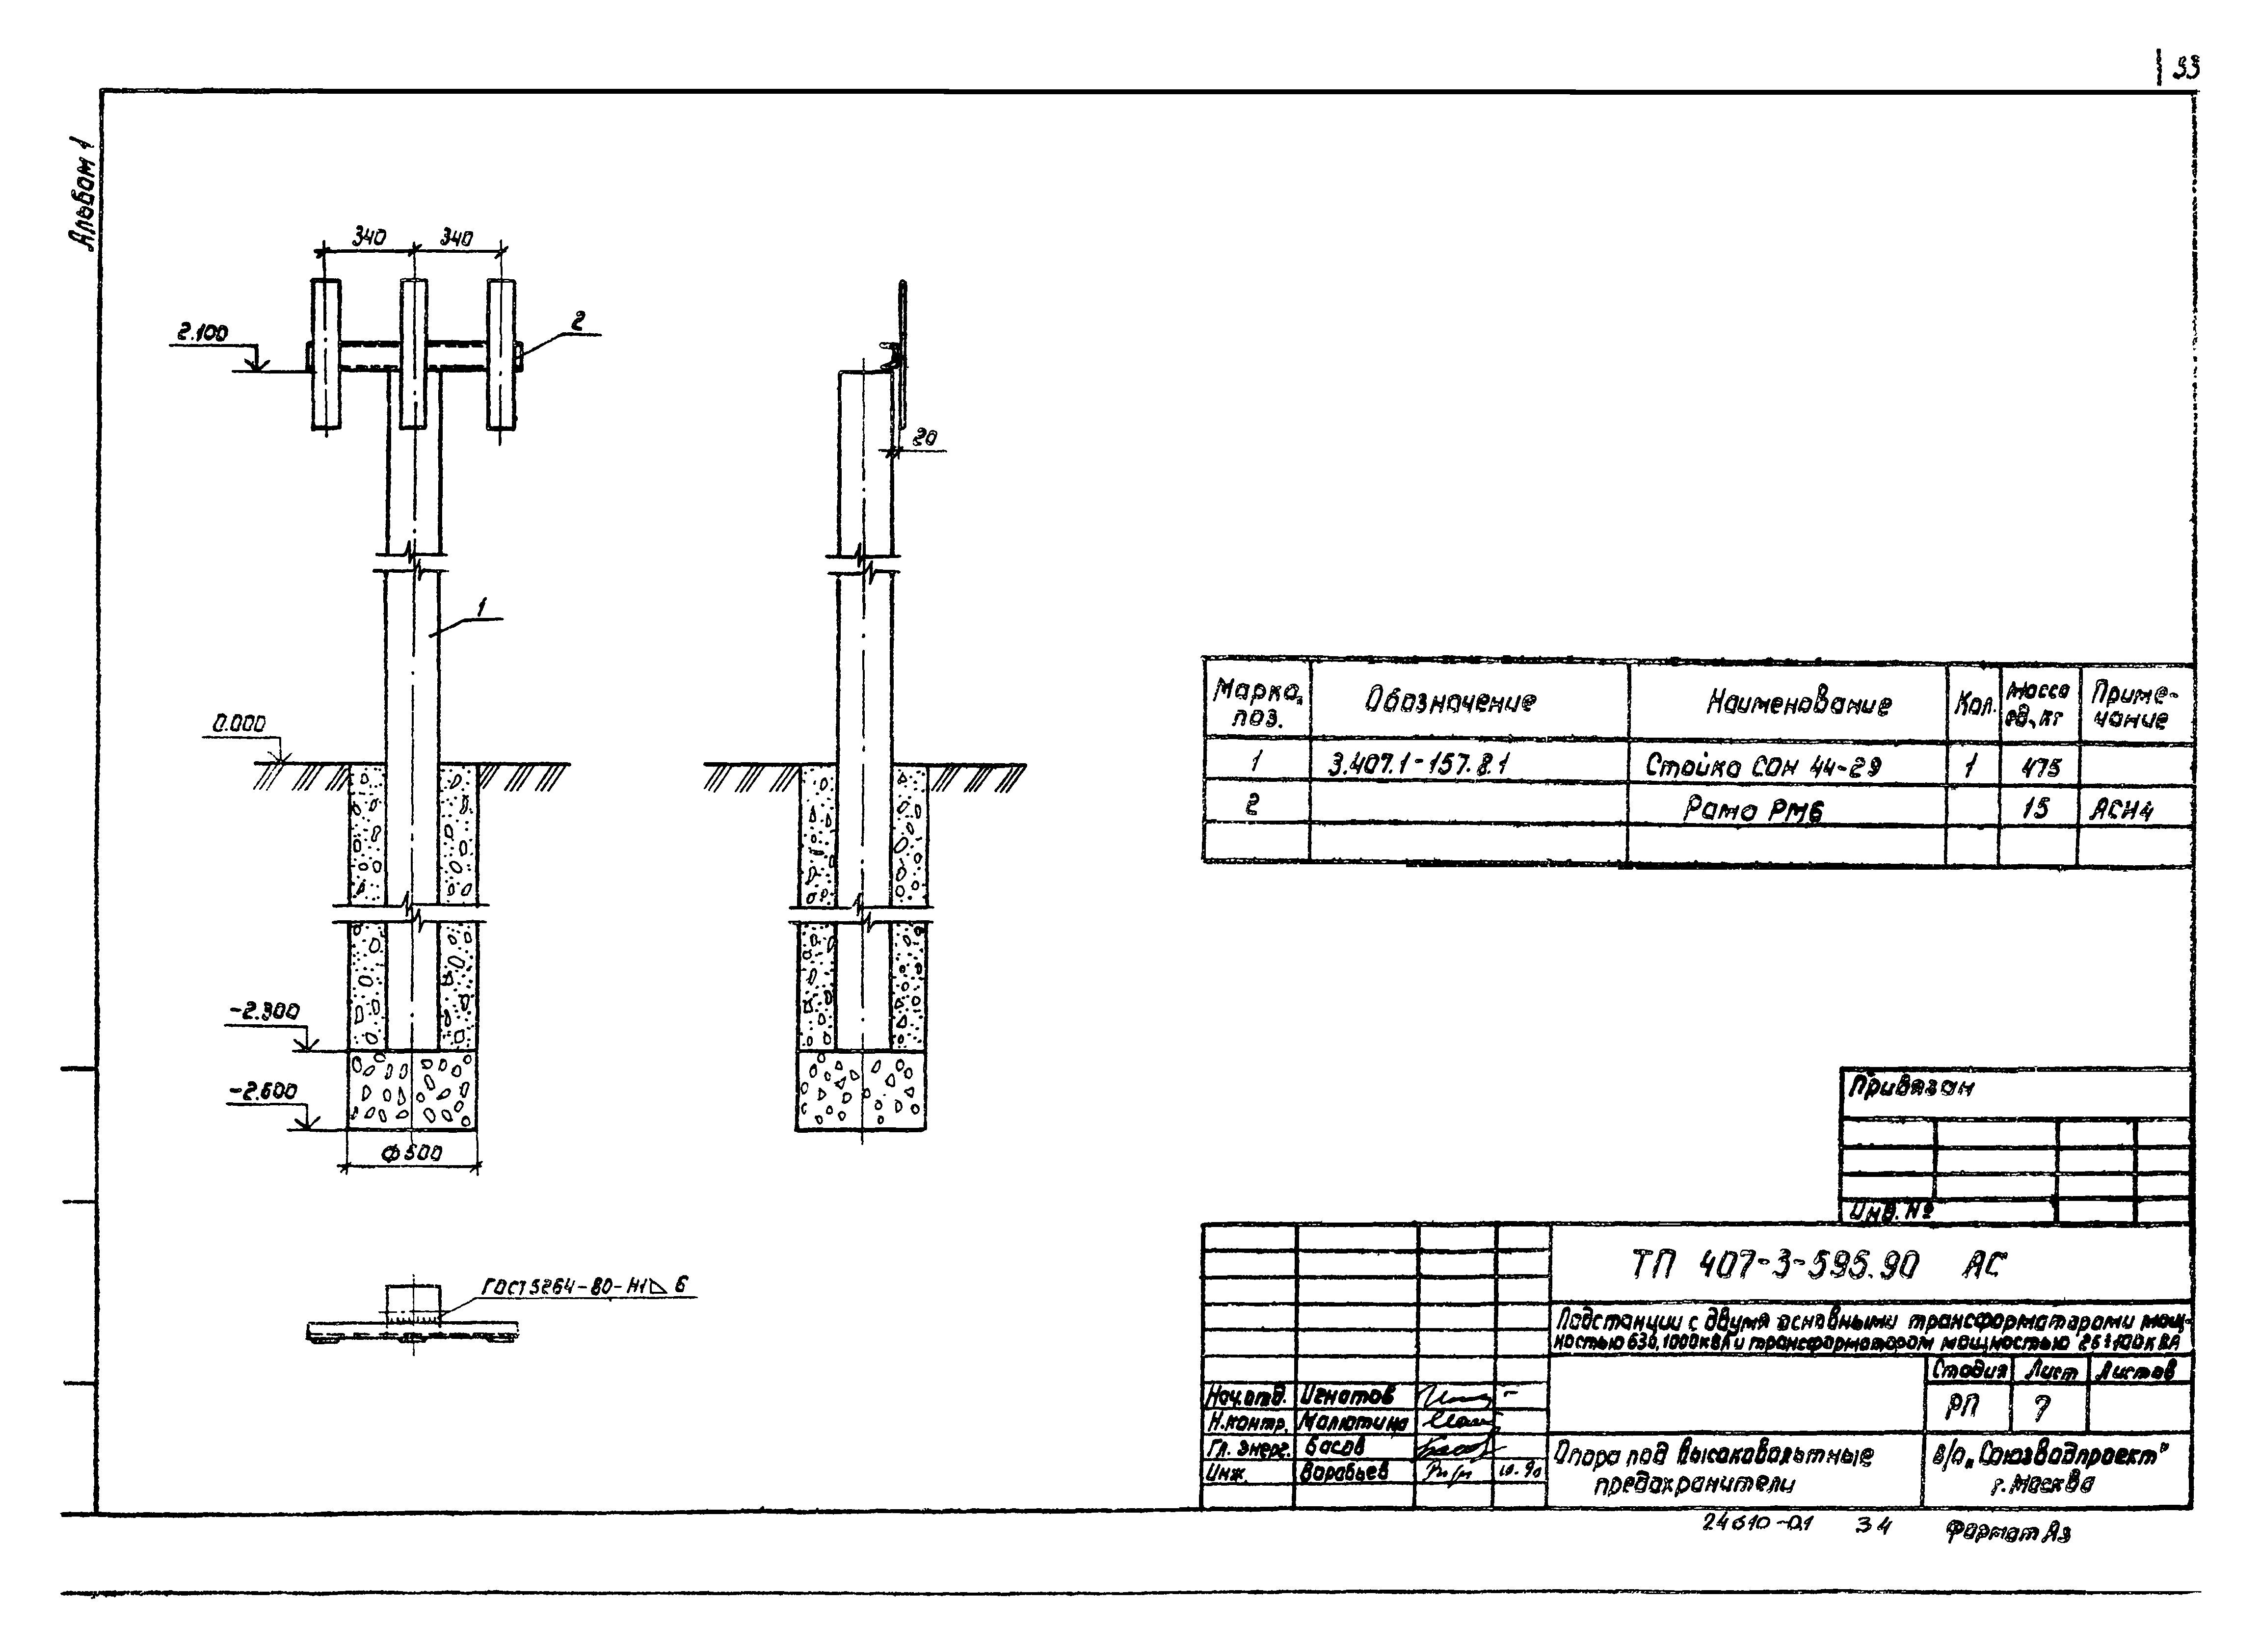 Типовой проект 407-3-595.90